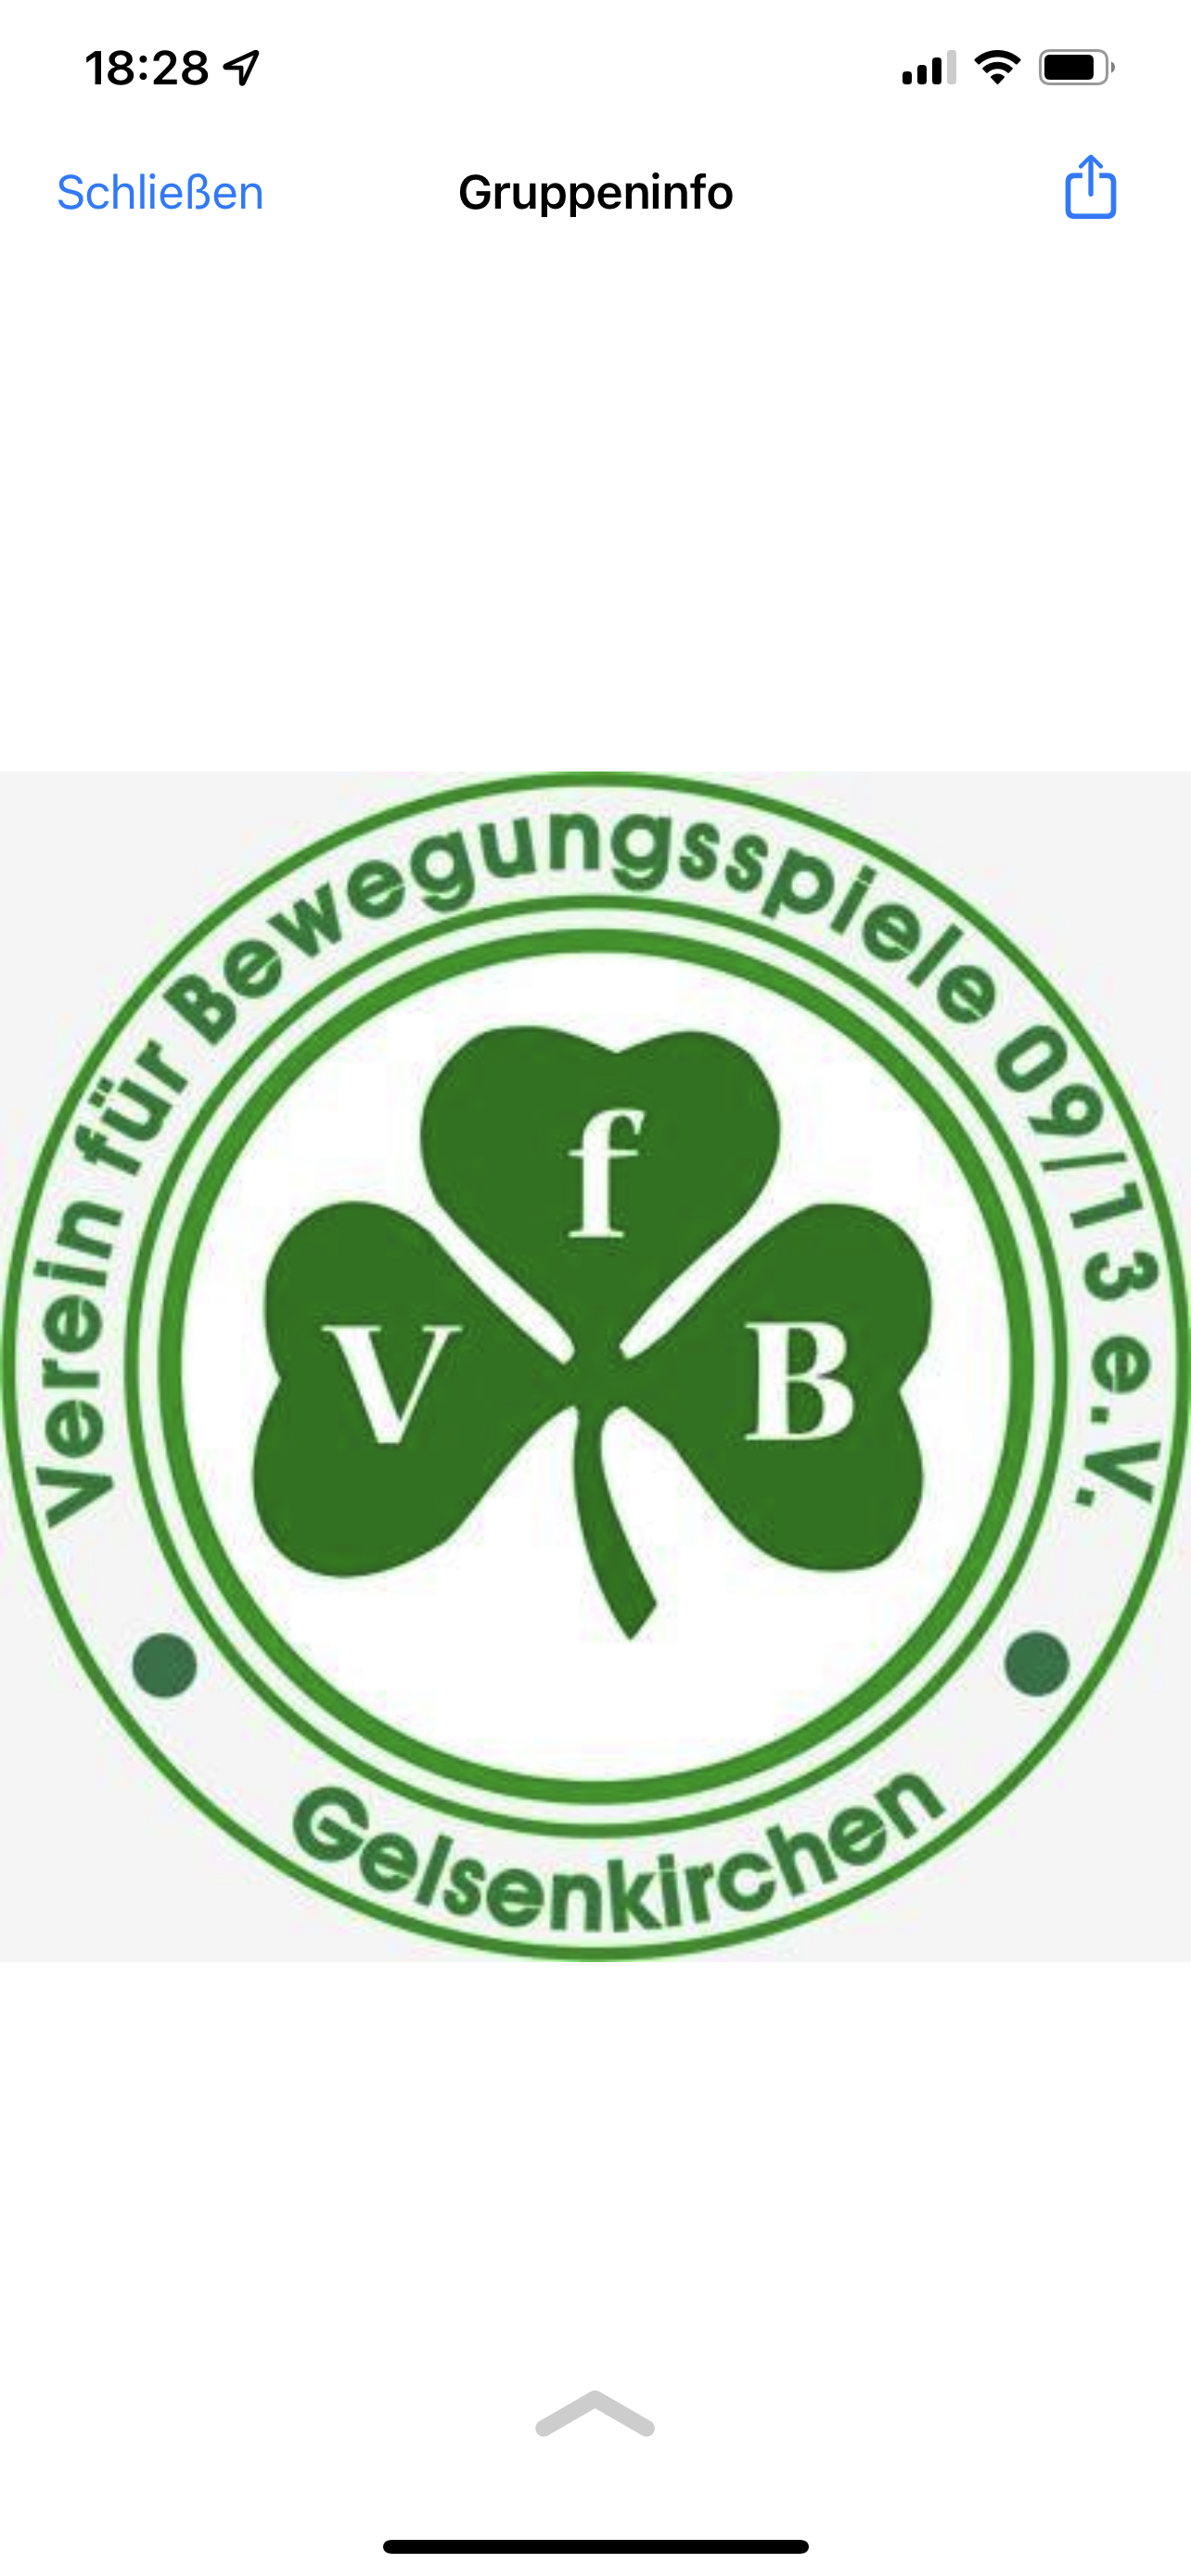 VfB Gelsenkirchen 